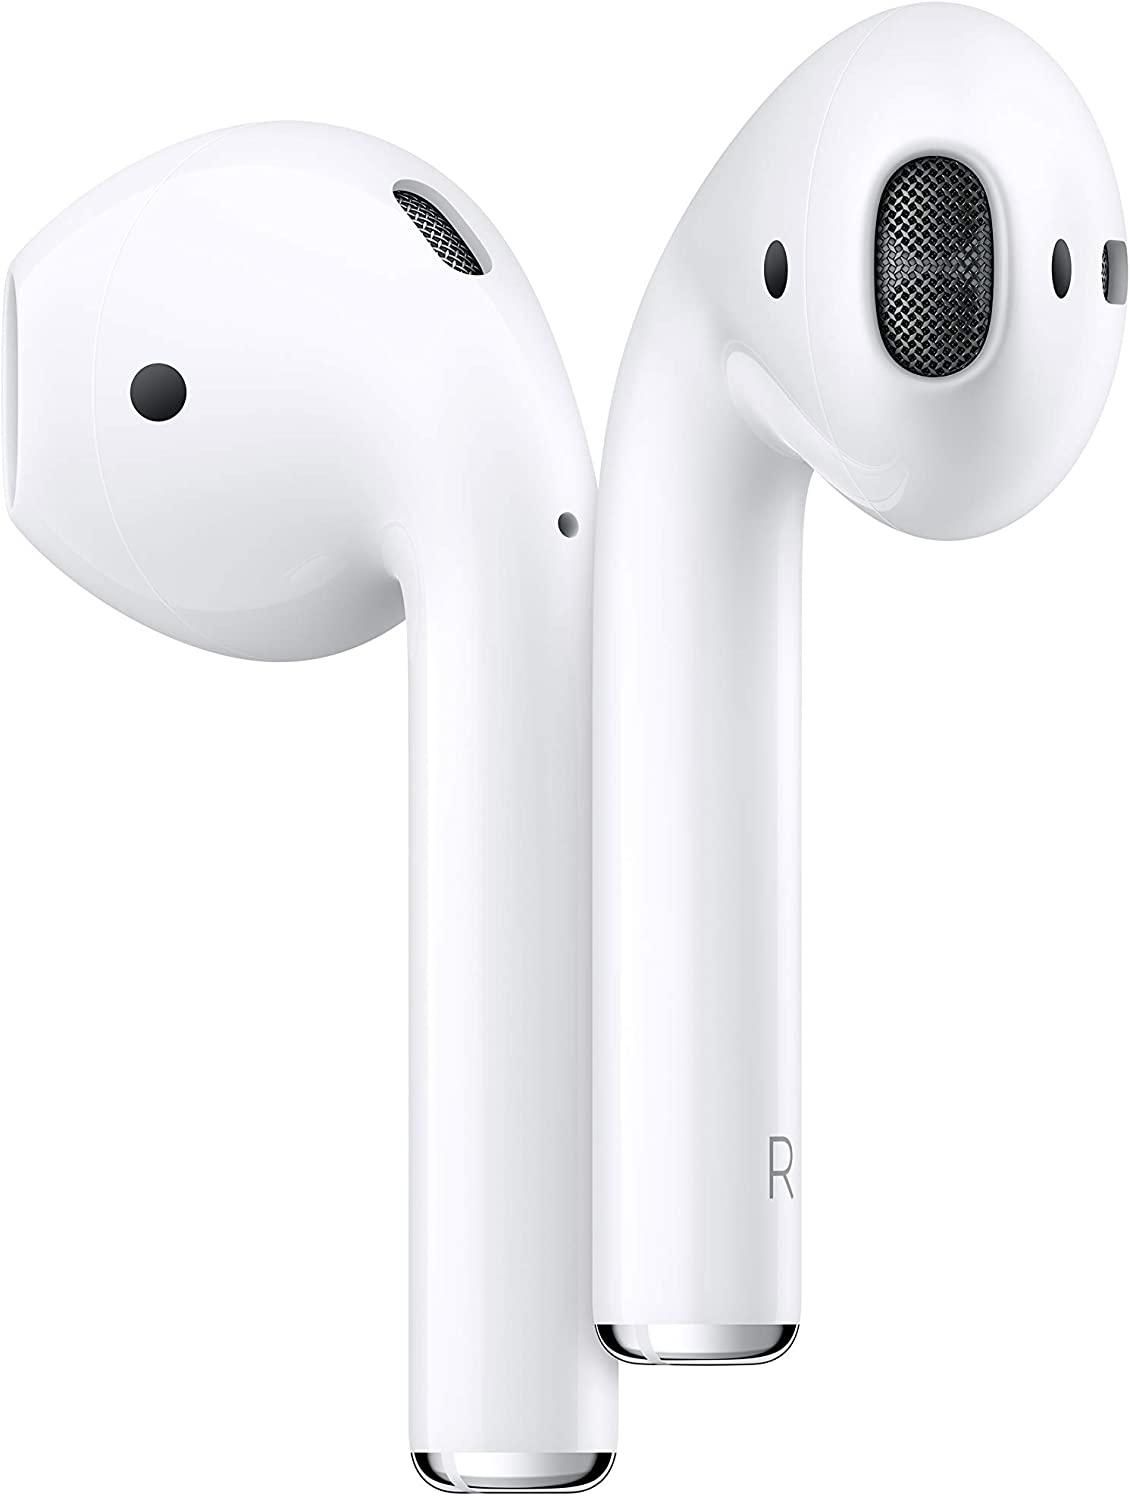 Apple AirPods ikinci nesil kablosuz kulaklıklar